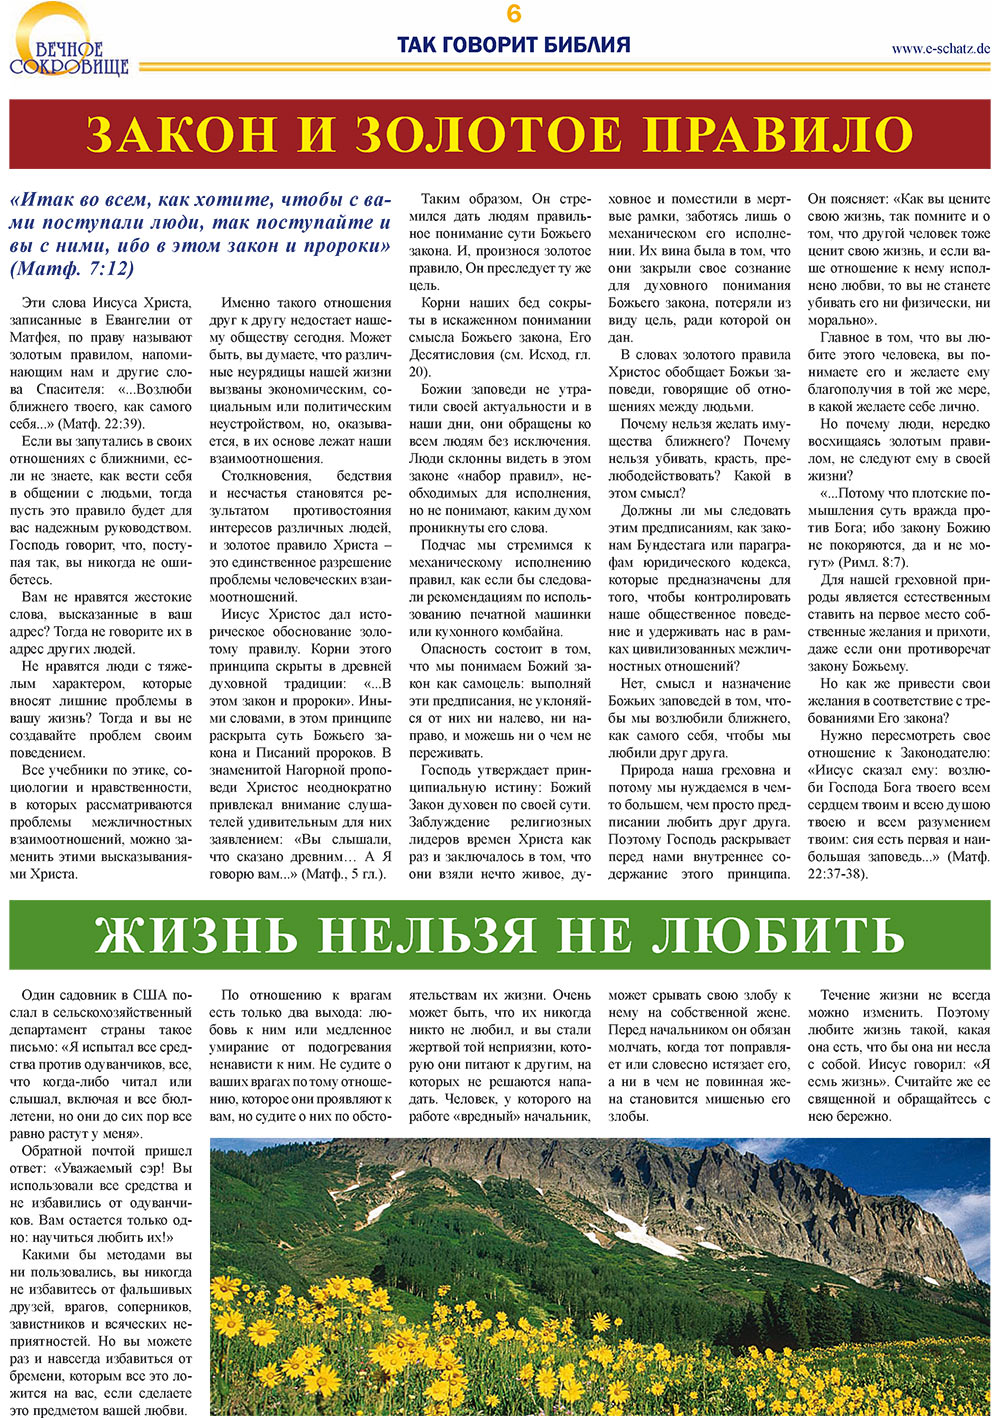 Вечное сокровище, газета. 2008 №2 стр.6